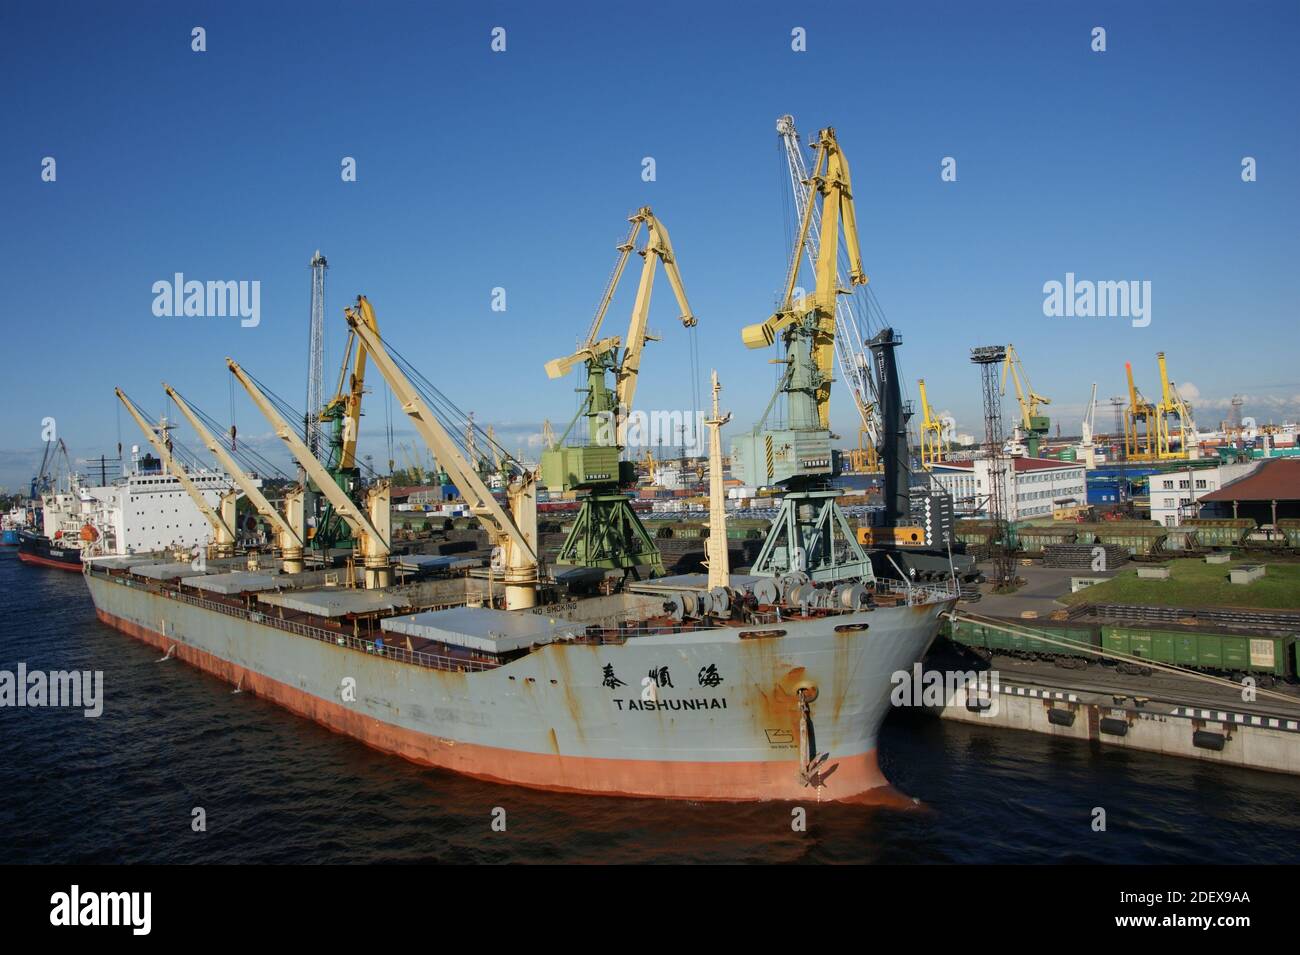 Taishunhai bulk carrier docked in St.Petersburg port July 2012 Stock Photo